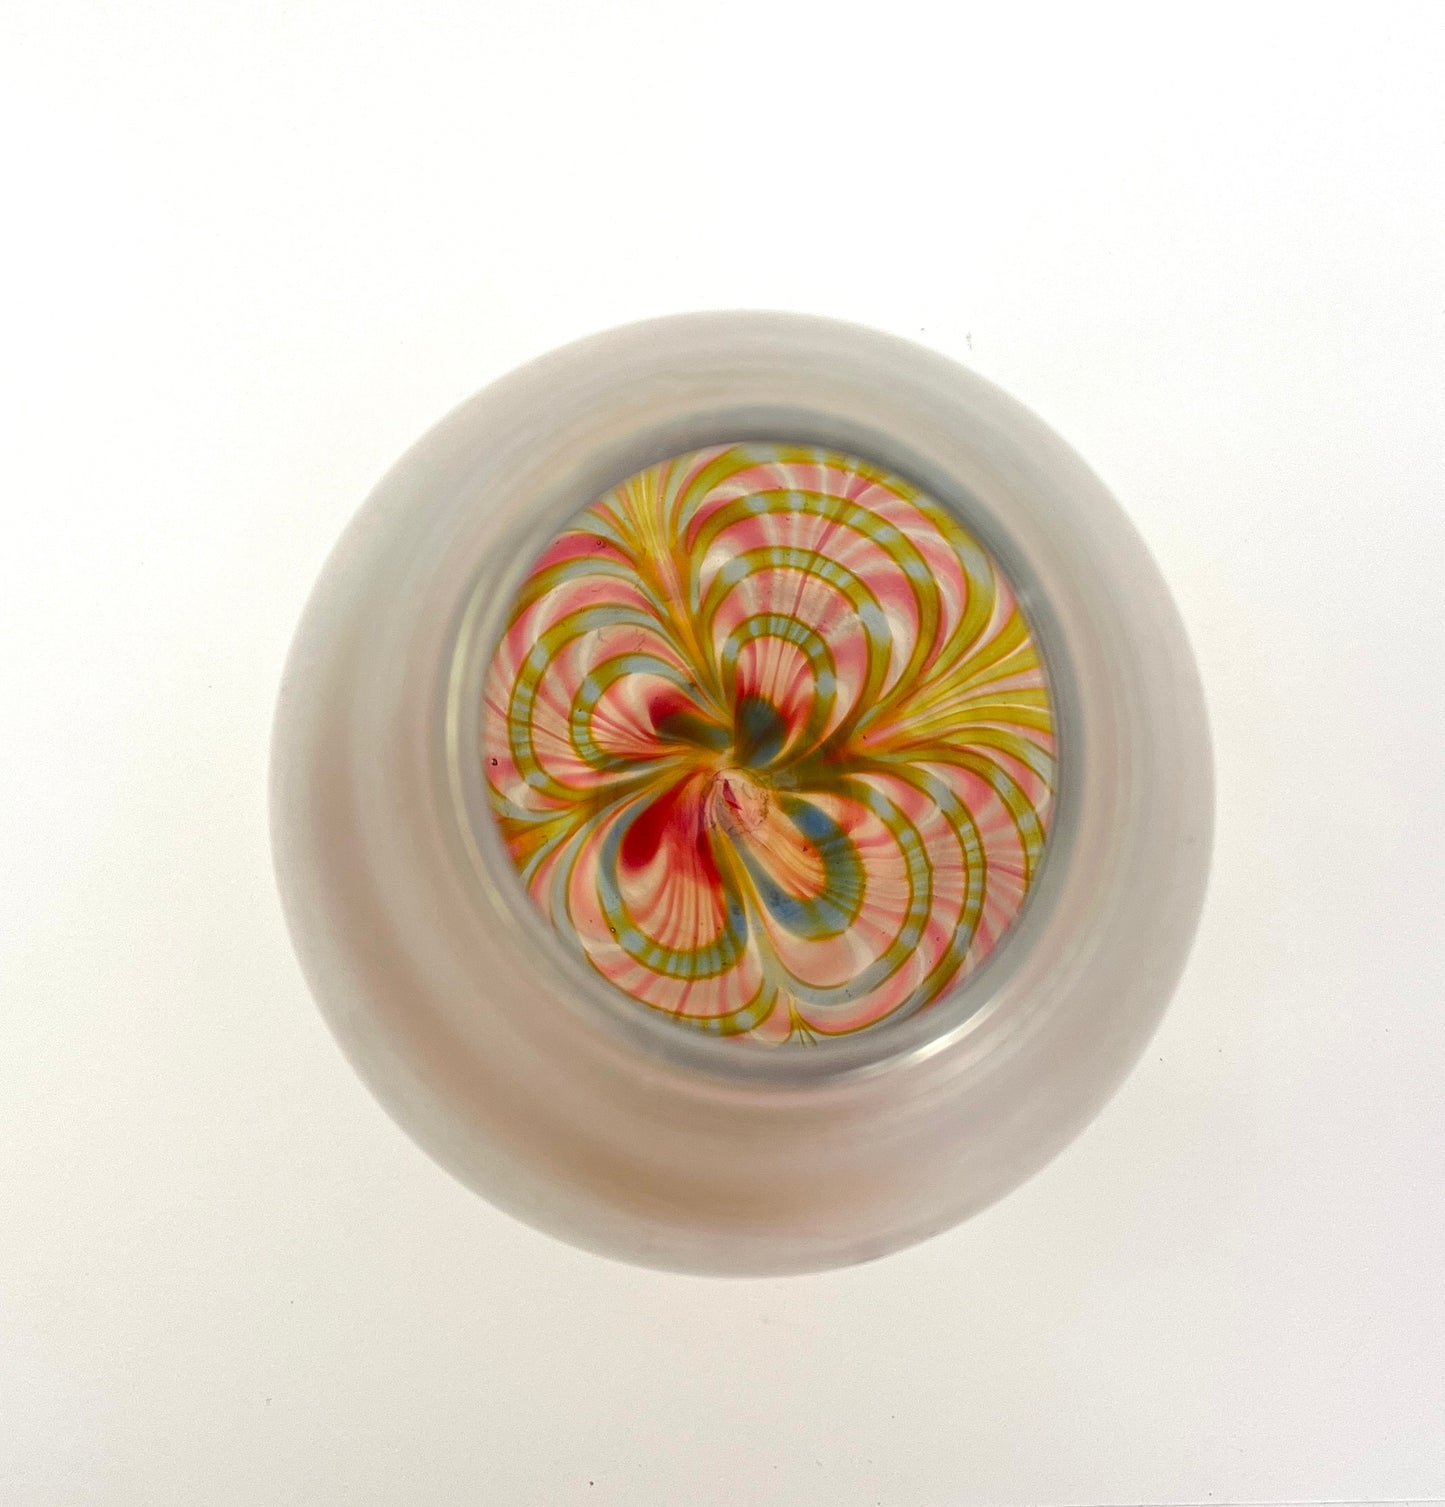 Art Deco Style Hand-blown Glass Vase, Murano?